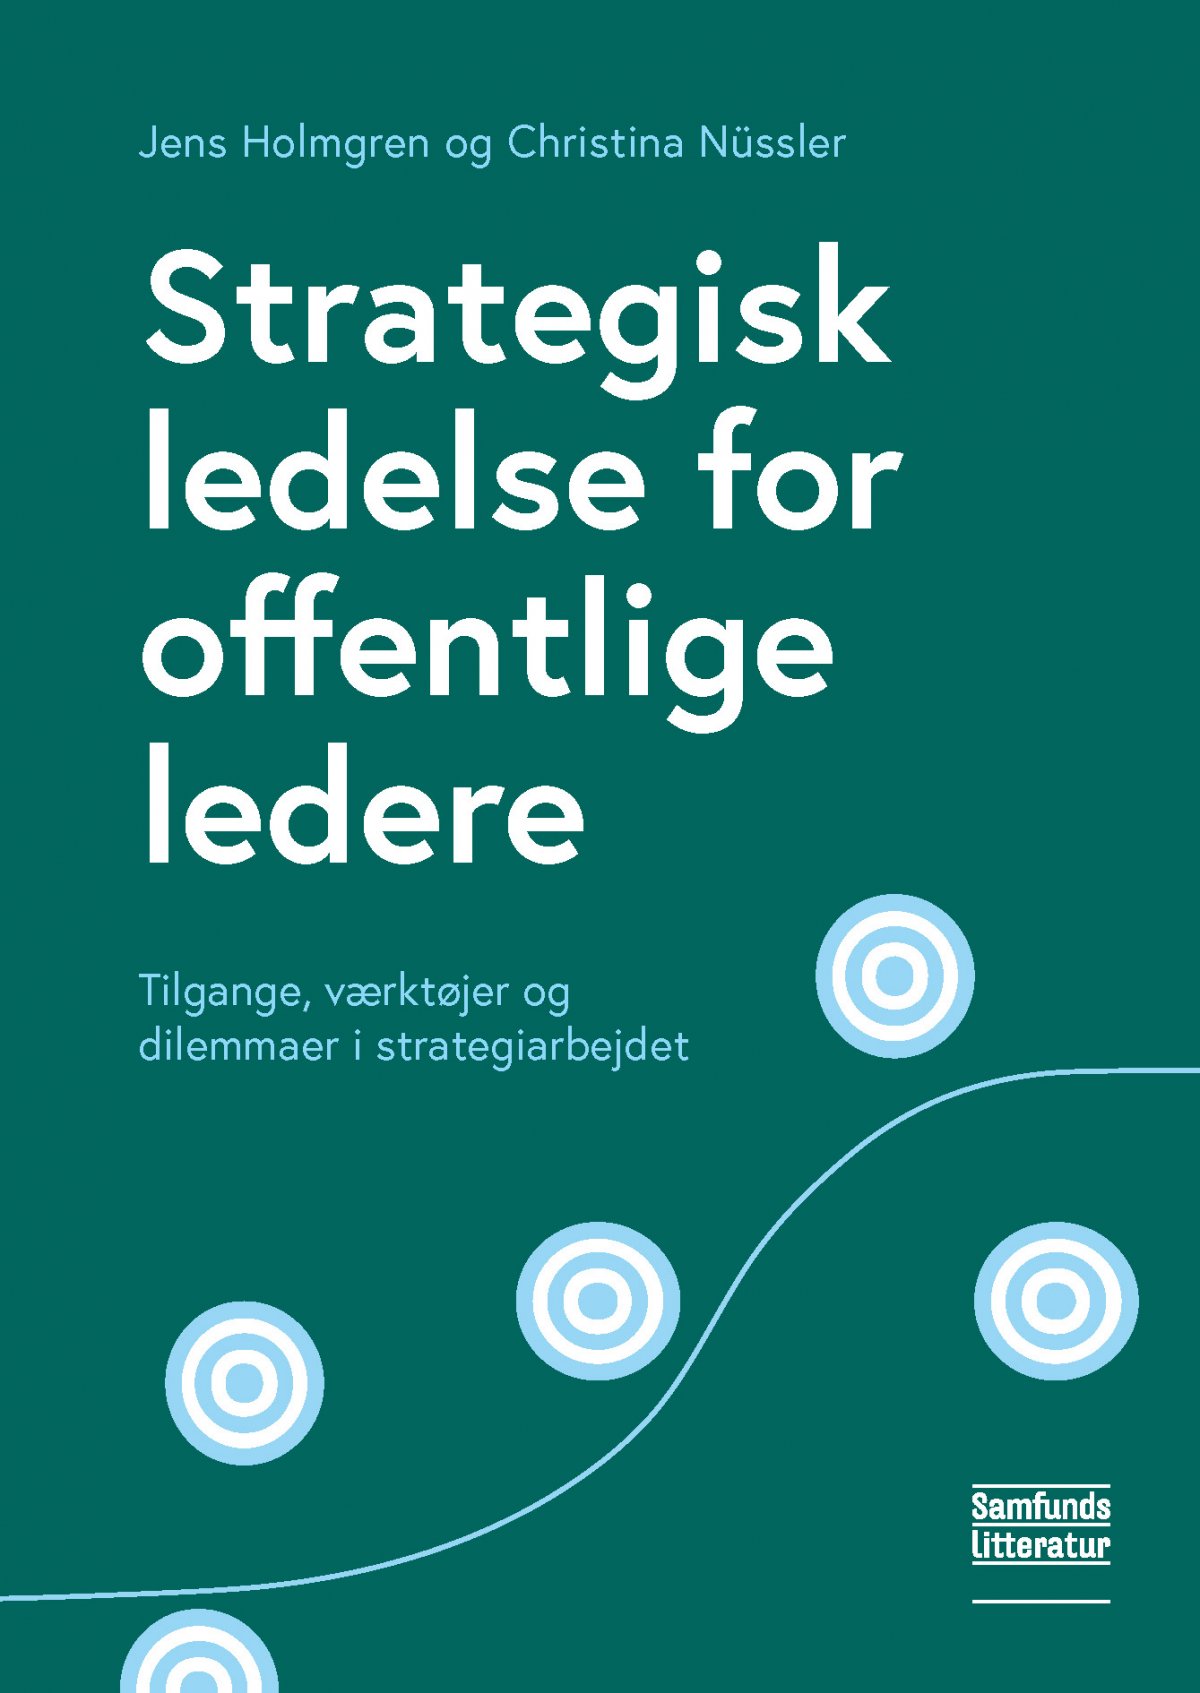 Strategisk ledelse for offentlige ledere - Tilgange, dilemmaer i strategiarbejdet